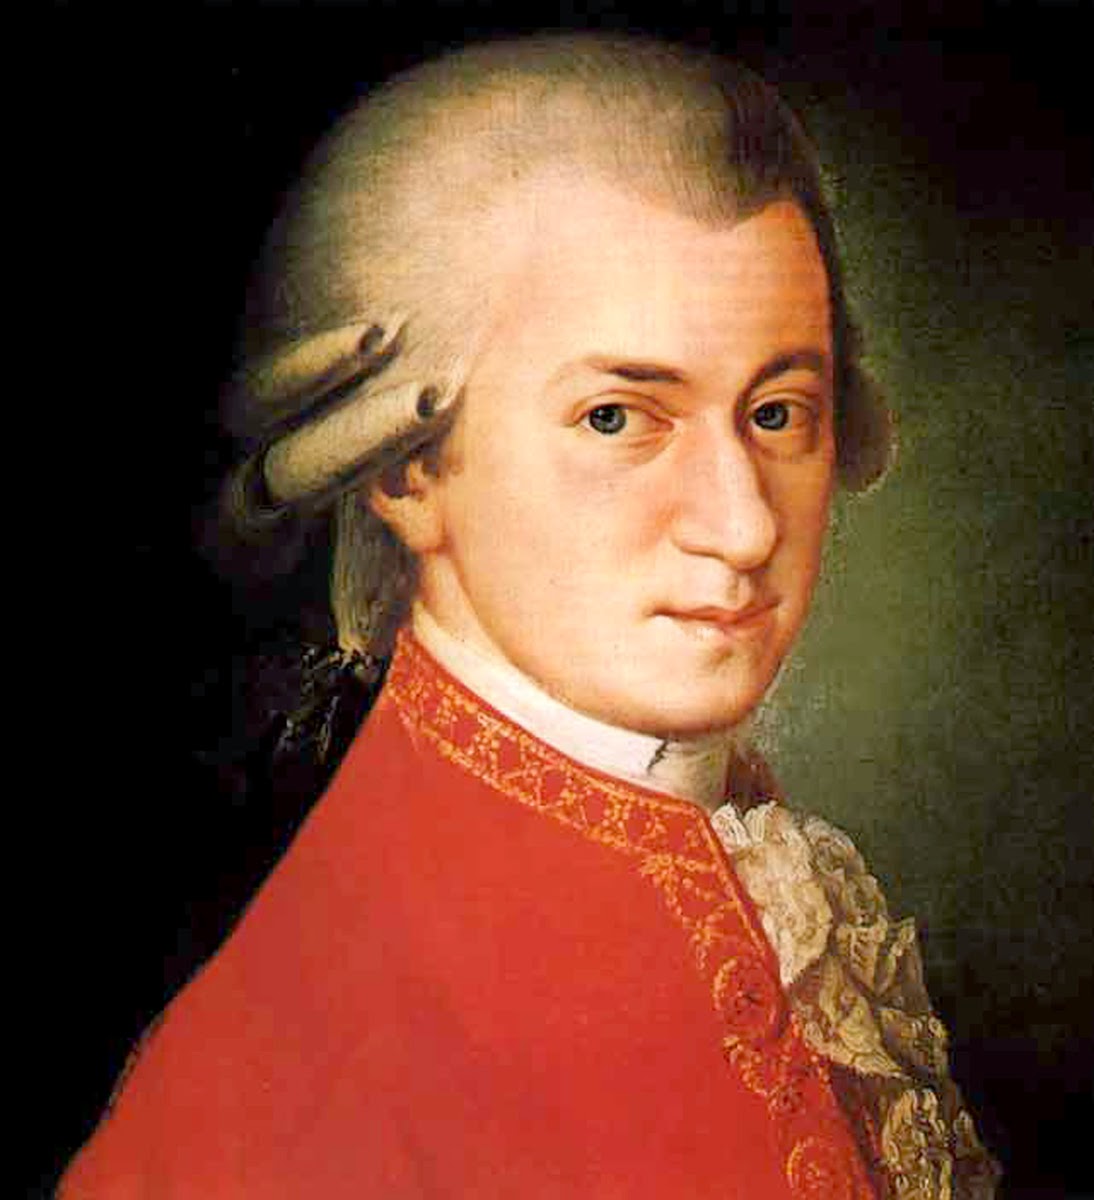 Kết quả hình ảnh cho Hình ảnh Gia đình lưu diễn của Mozart (bố, chị gái Maria Anna và Wolfgang Amadeus Mozart)